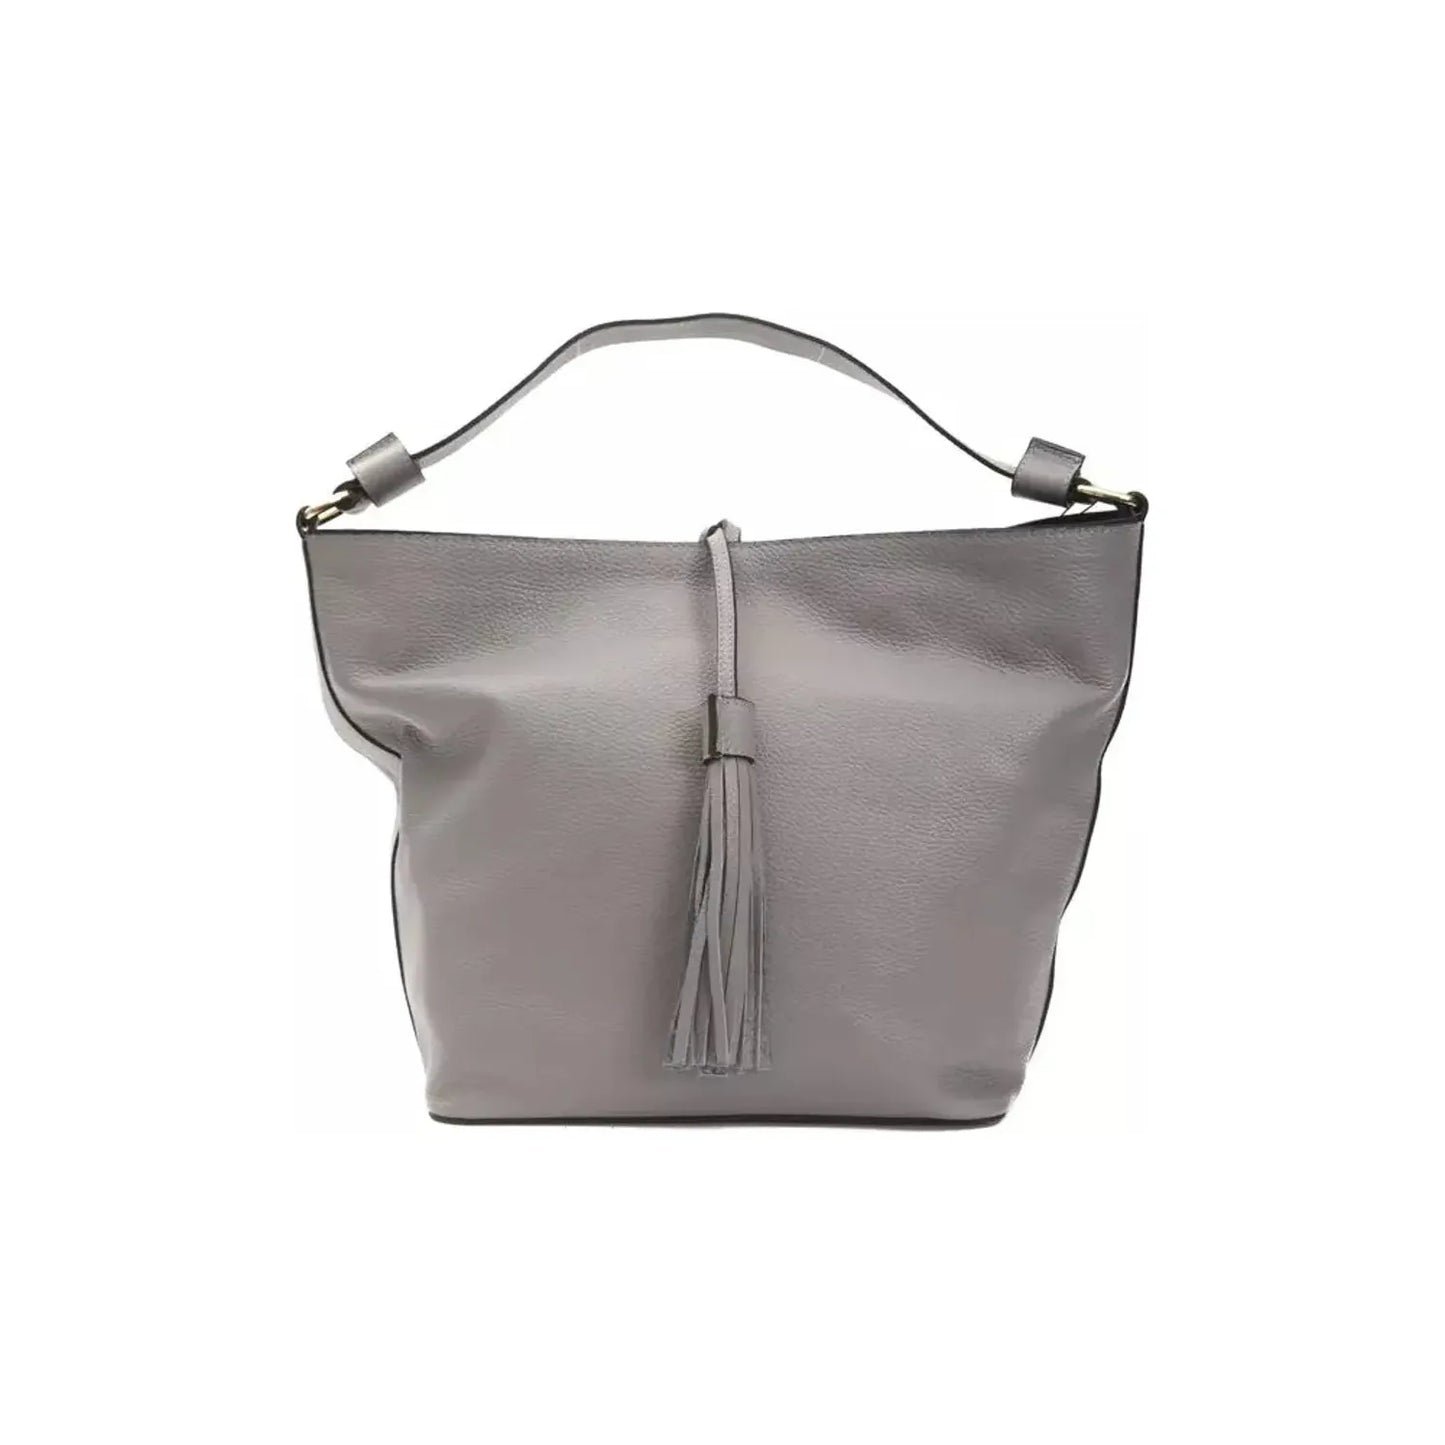 Pompei Donatella Chic Gray Leather Shoulder Bag - Adjustable Strap WOMAN SHOULDER BAGS gray-leather-shoulder-bag-1